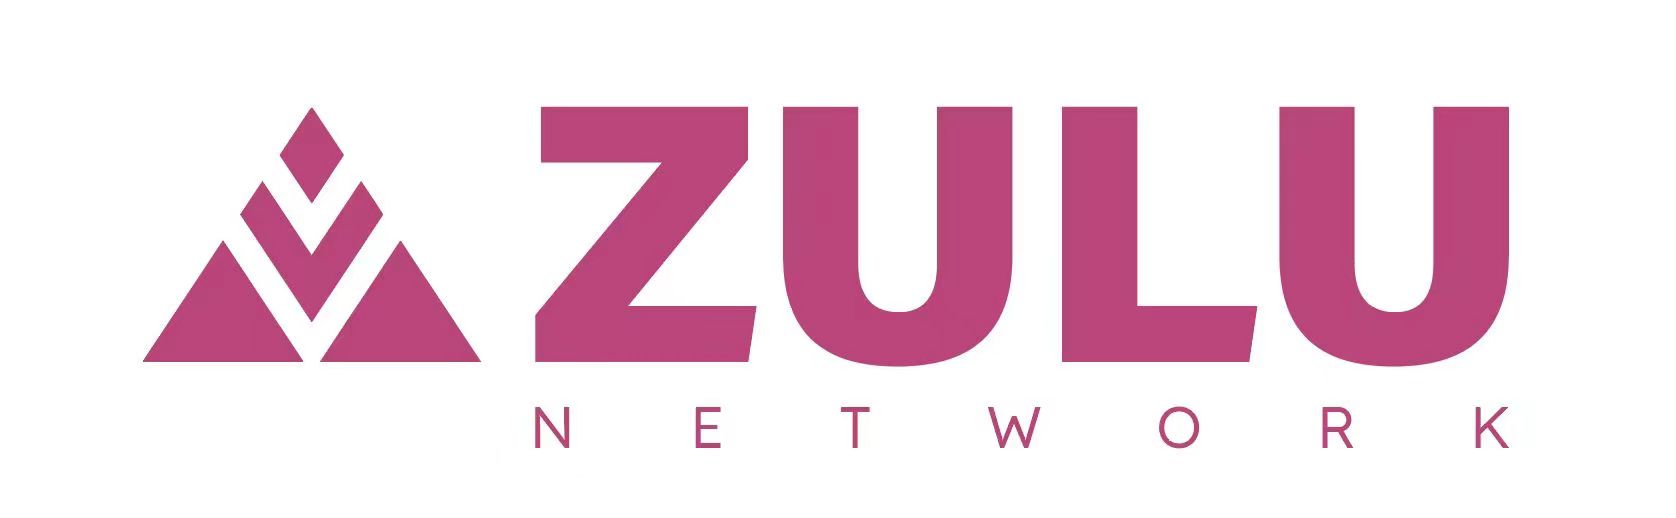 , Zulu Completes First ZKP Verify Test Implementation Written with Bitcoin Script